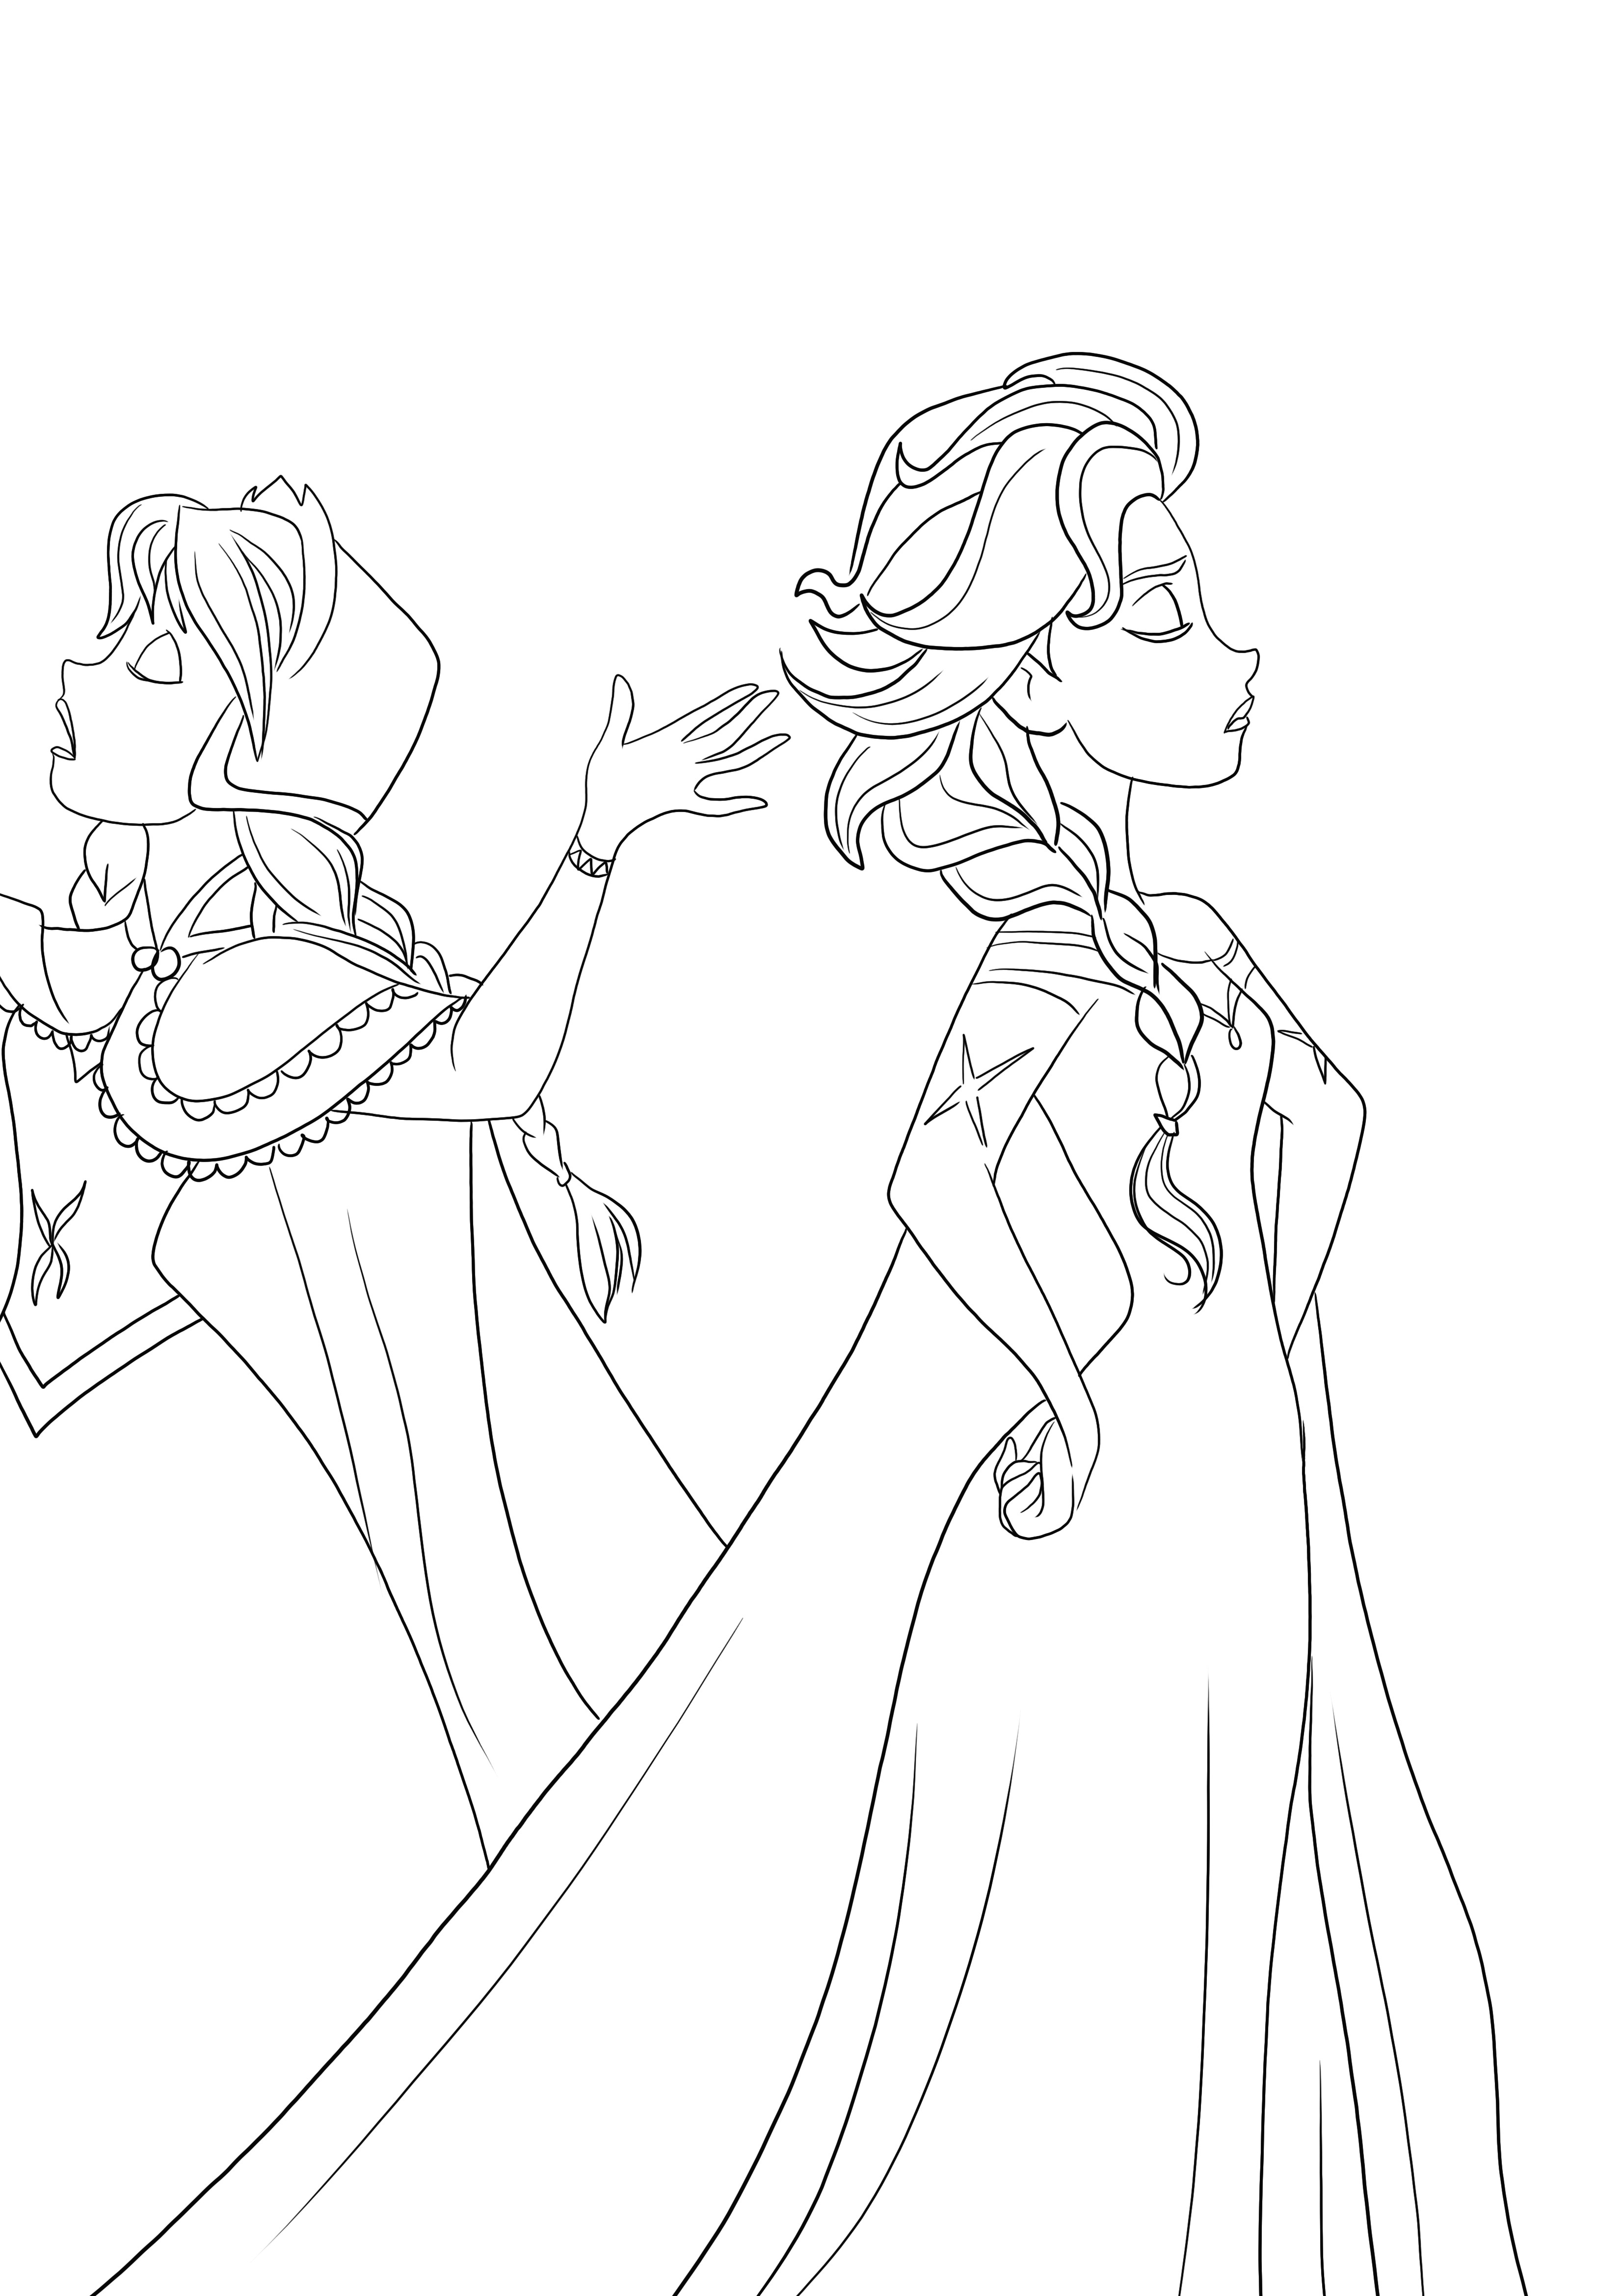 Anna et Elsa se disputent - une feuille de coloriage amusante à imprimer gratuite pour les enfants